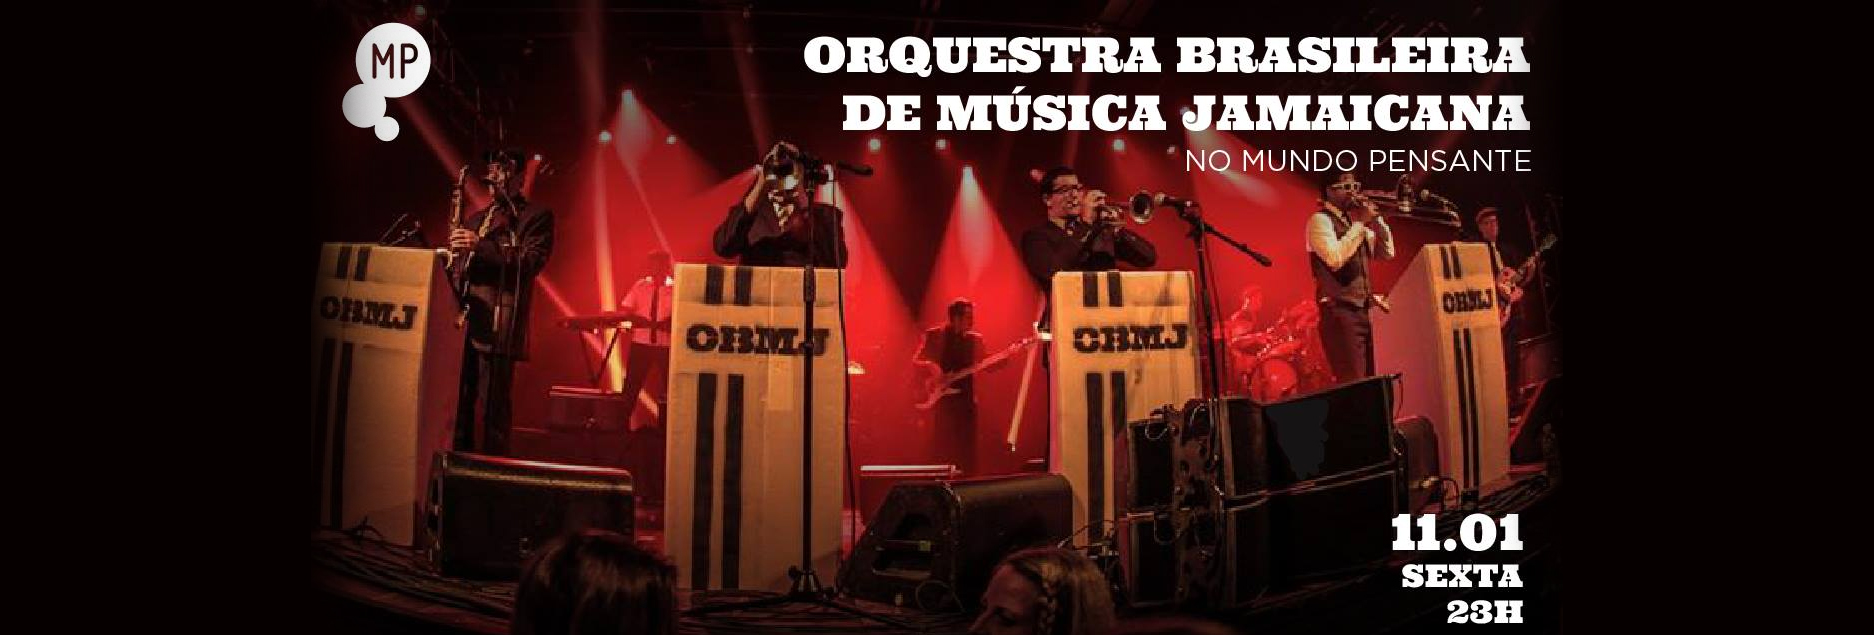 Orquestra Brasileira De Música Jamaicana no Mundo Pensante